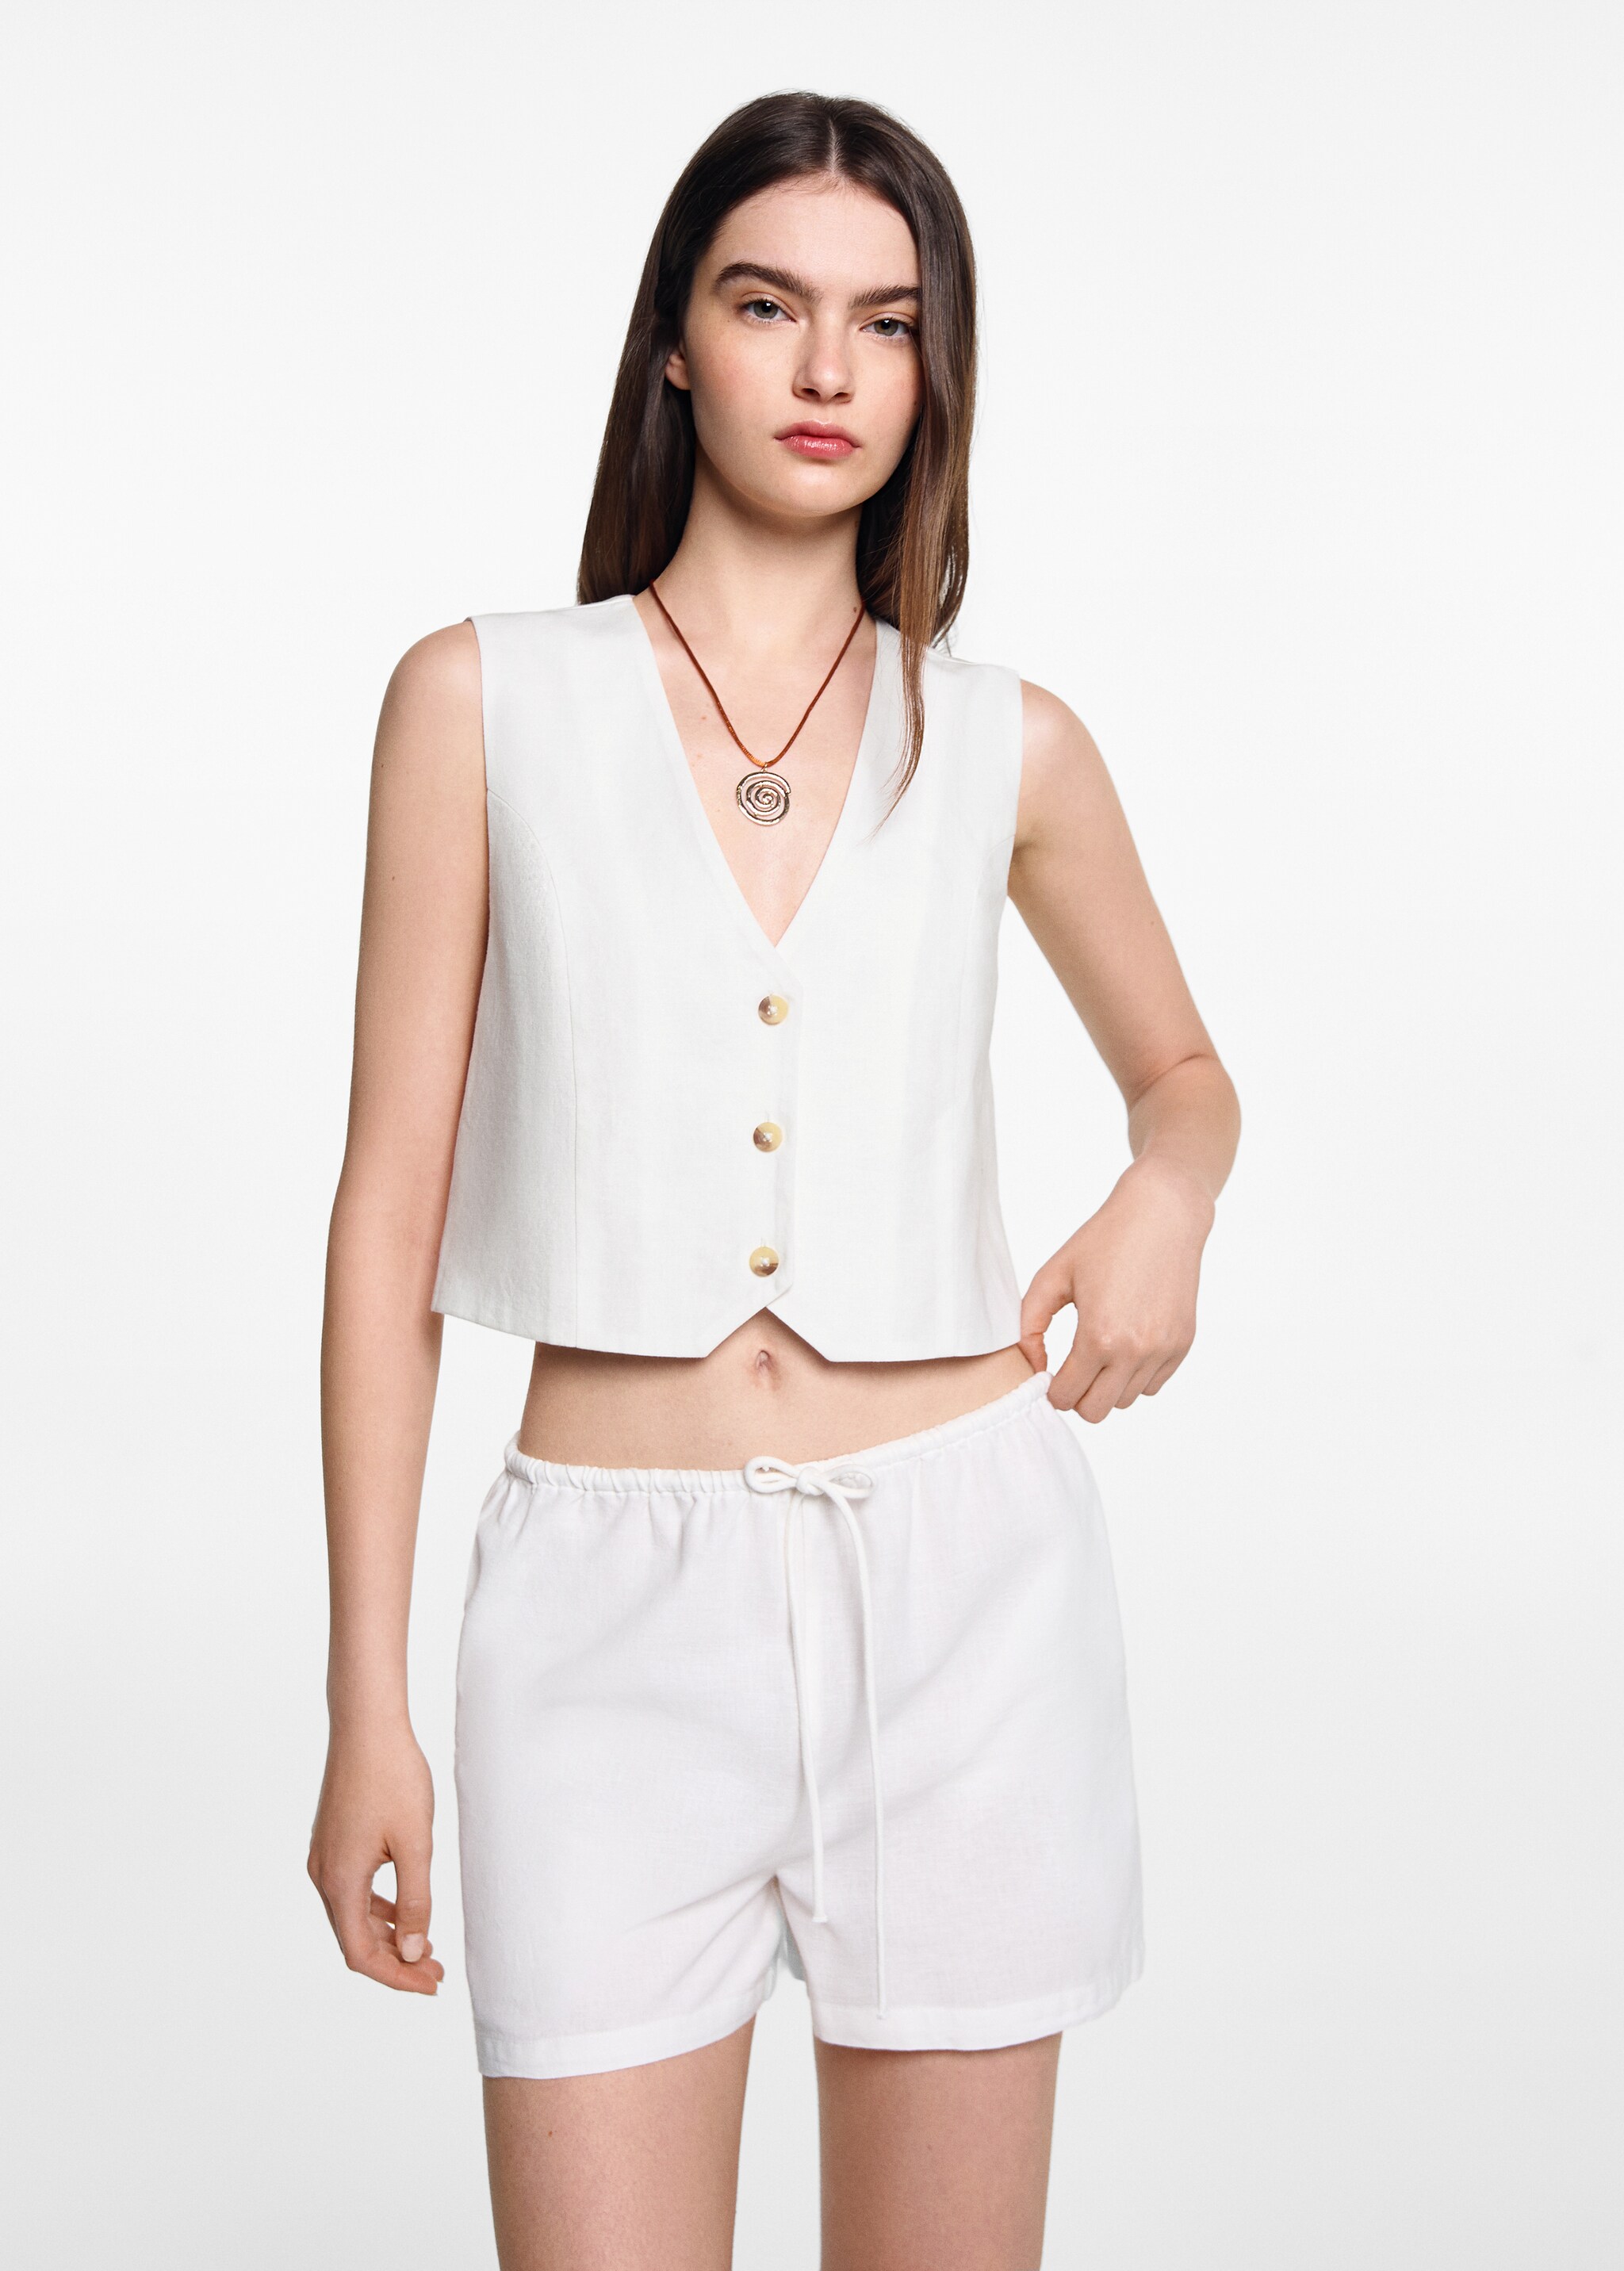 Linen waistcoat with buttons   - Medium plane